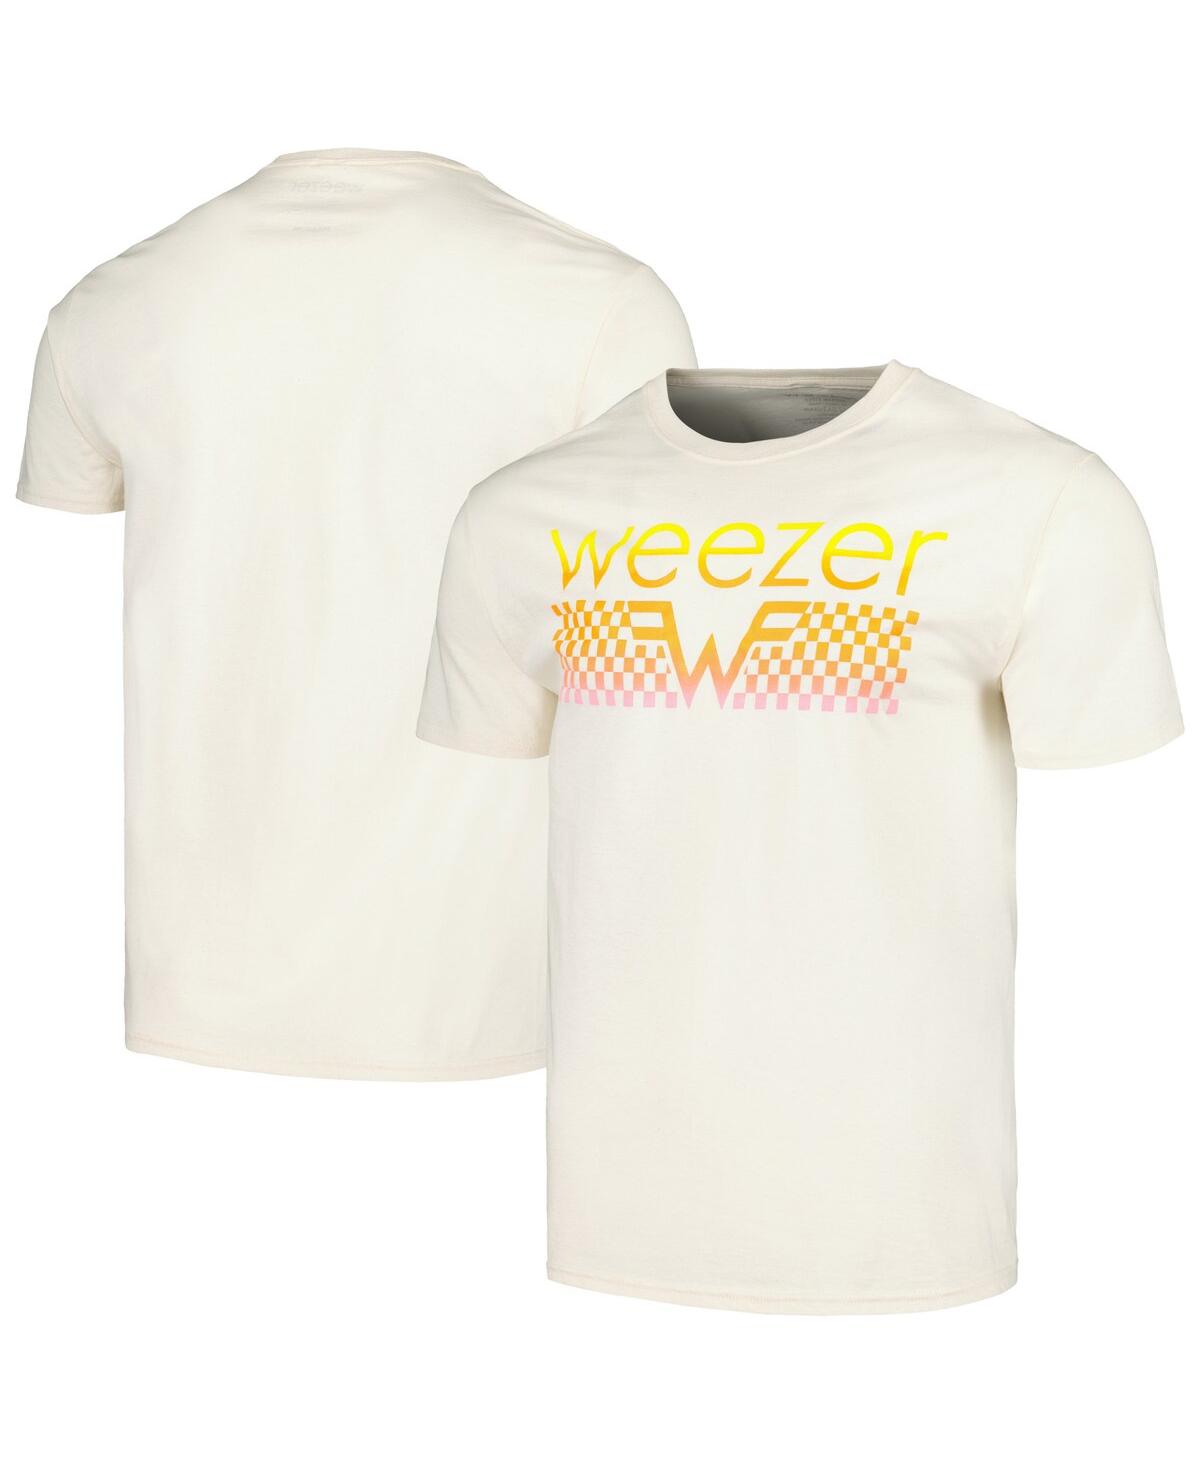 Manhead Merch Men's Natural Weezer T-shirt